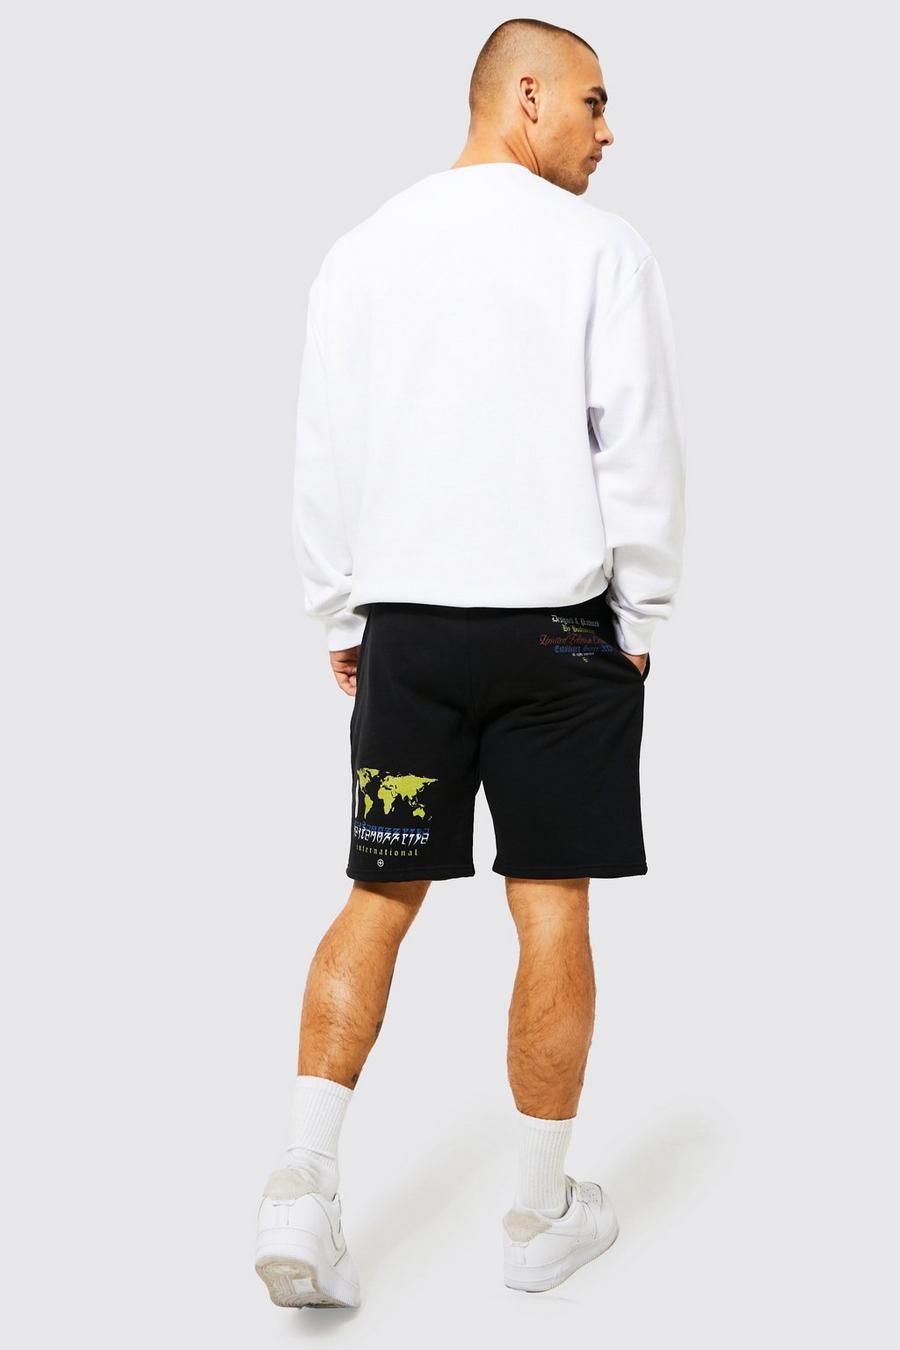 Pantalón corto holgado de tela jersey con estampado gráfico de mapa, Black nero